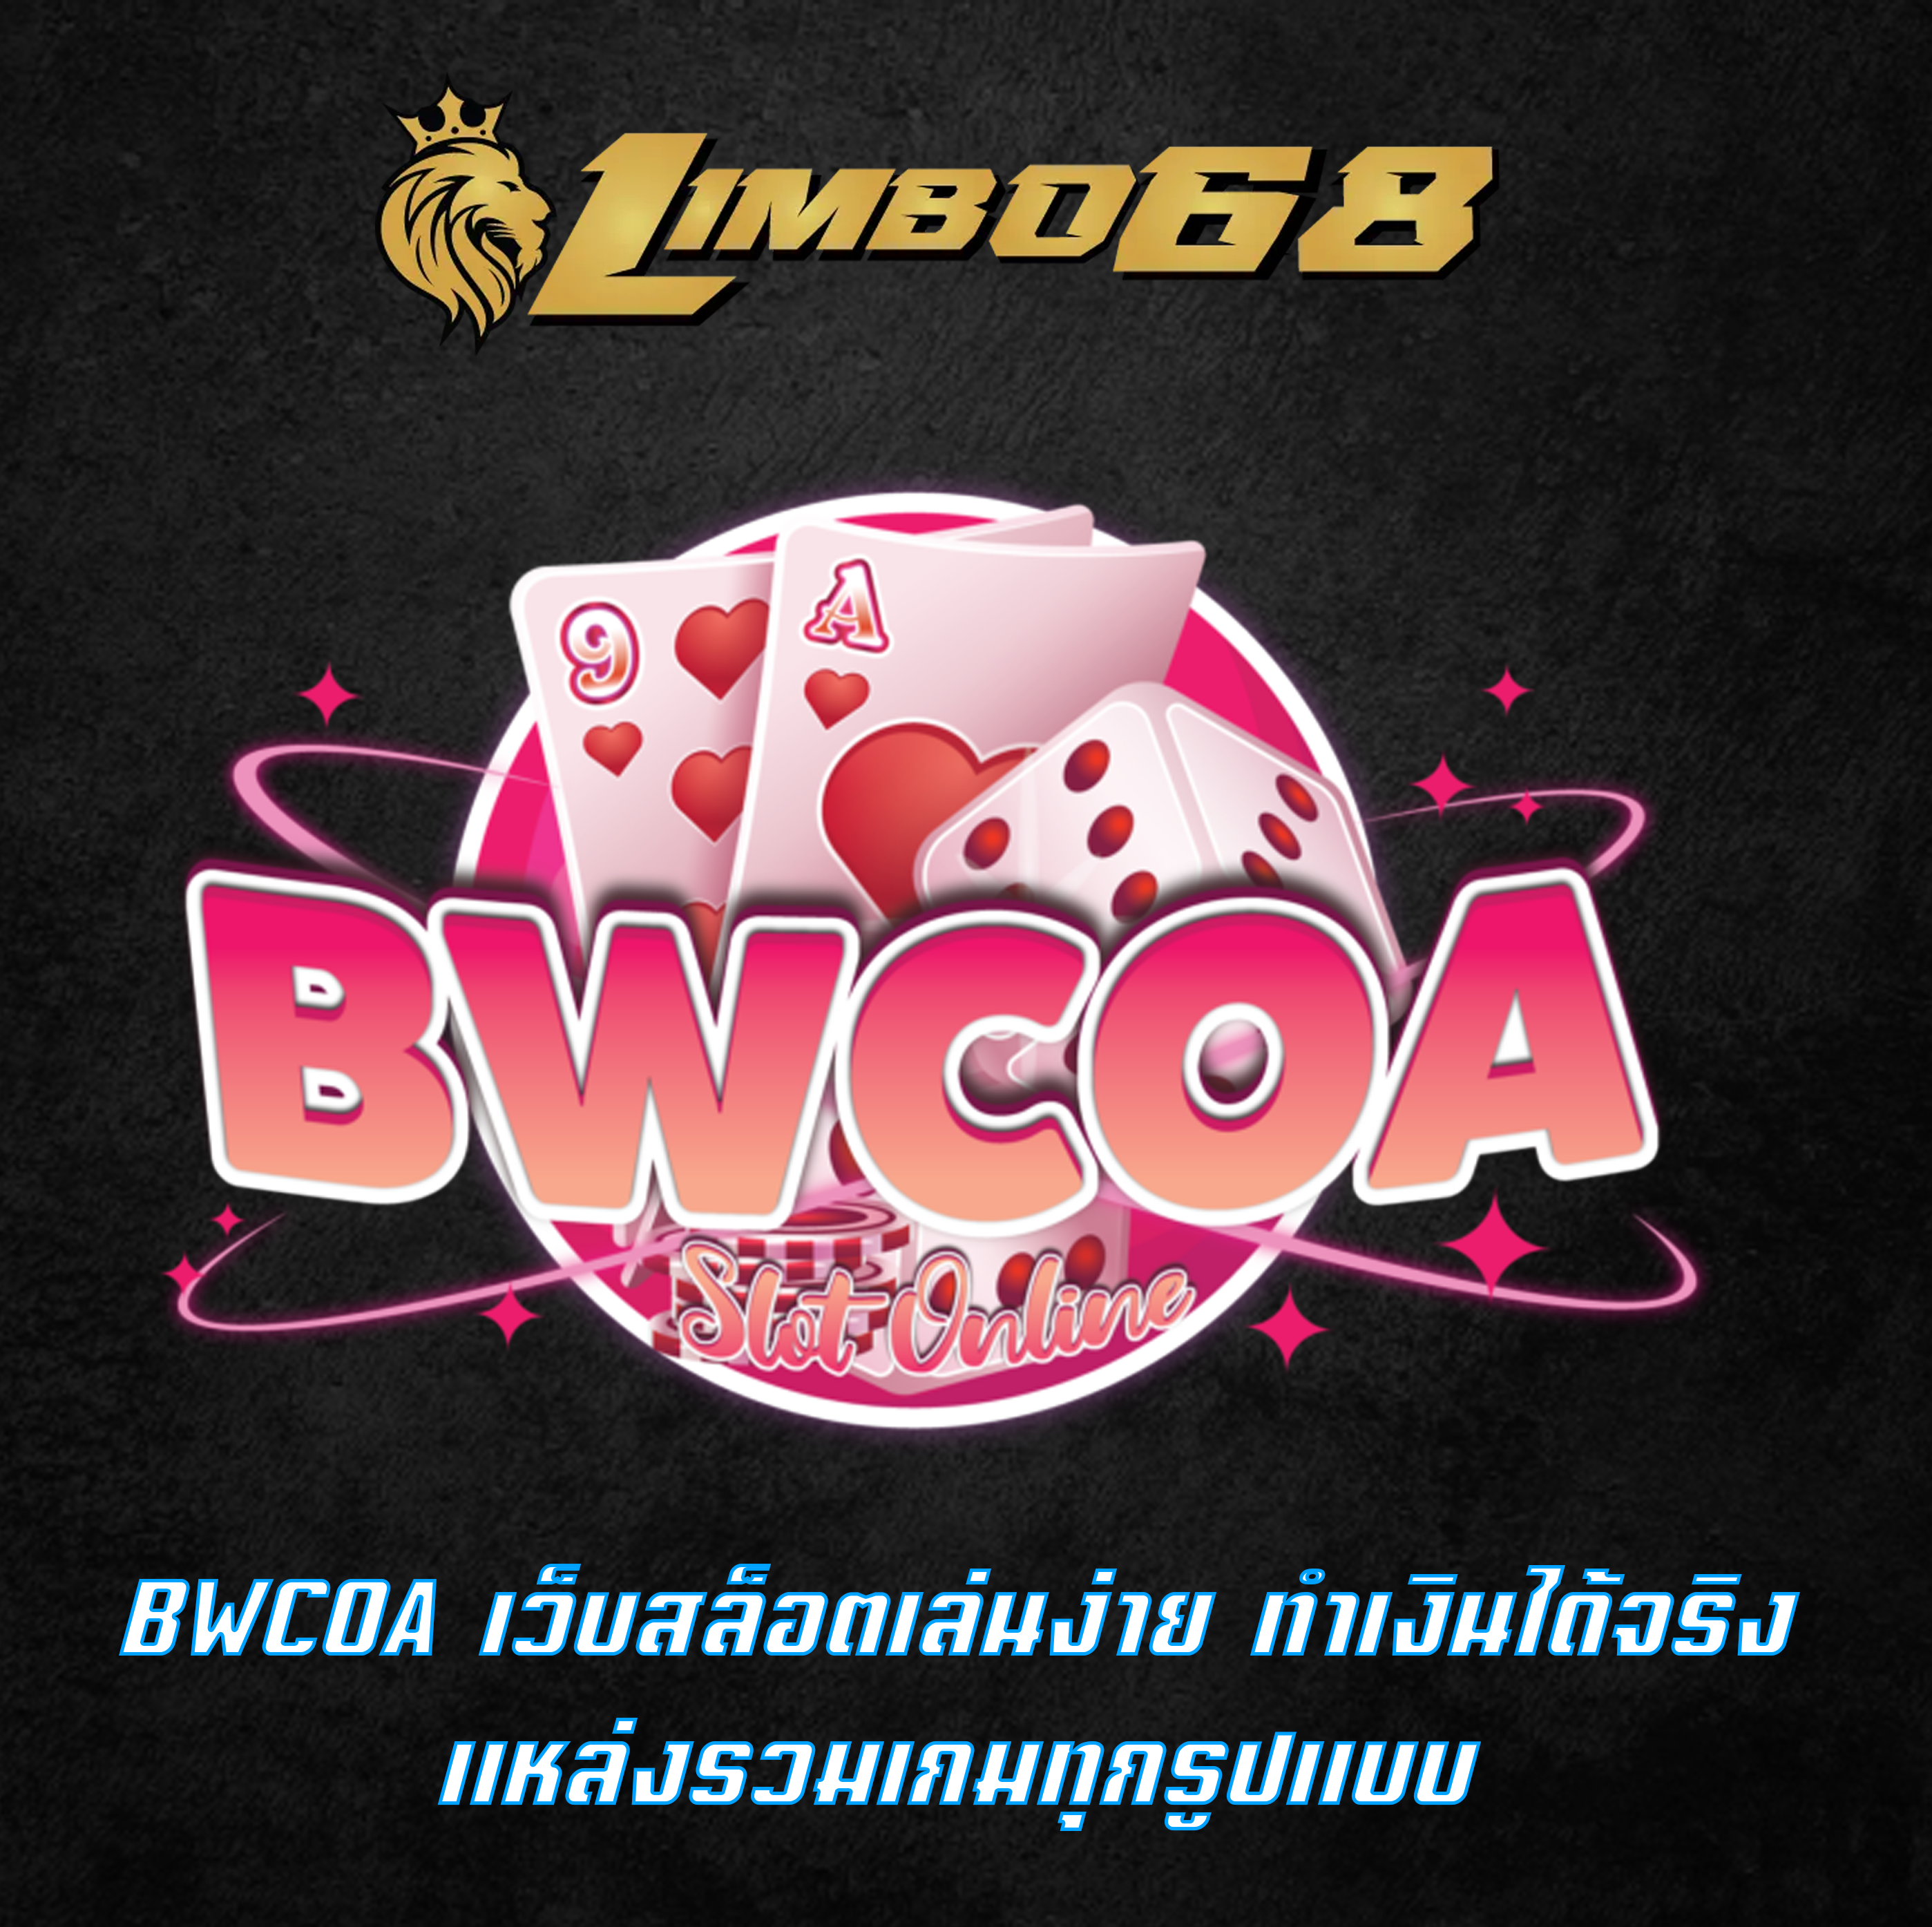 BWCOA เว็บสล็อตเล่นง่าย ทำเงินได้จริง แหล่งรวมเกมทุกรูปแบบ